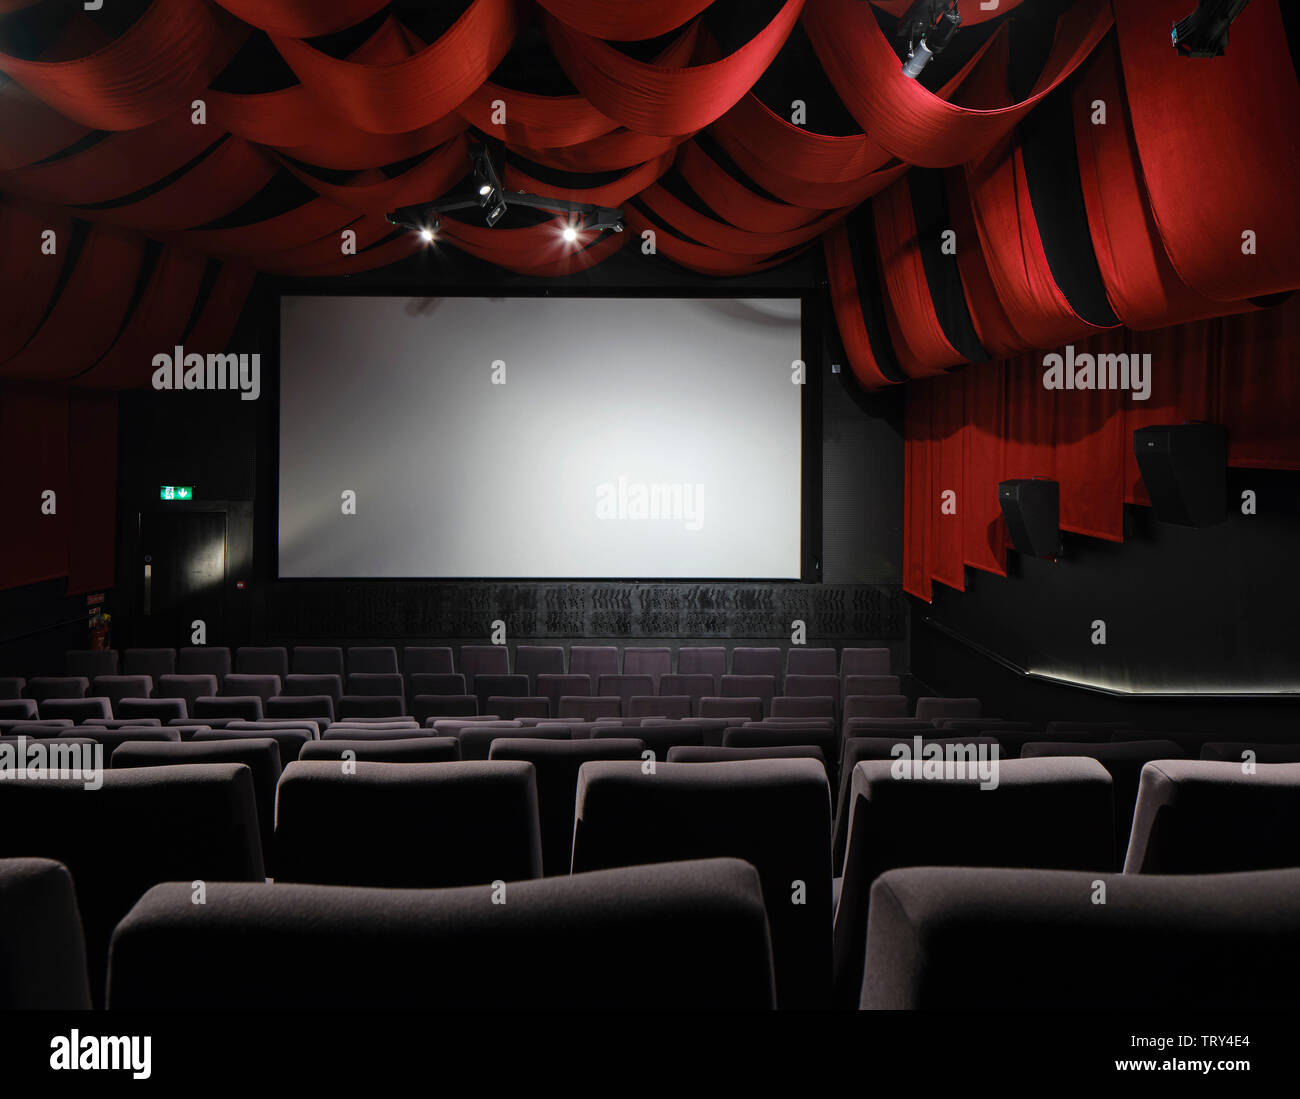 Salle de projection drapé de velours rouge. Pálás Cinéma, Galway, Irlande. Architecte : dePaor, 2017. Banque D'Images